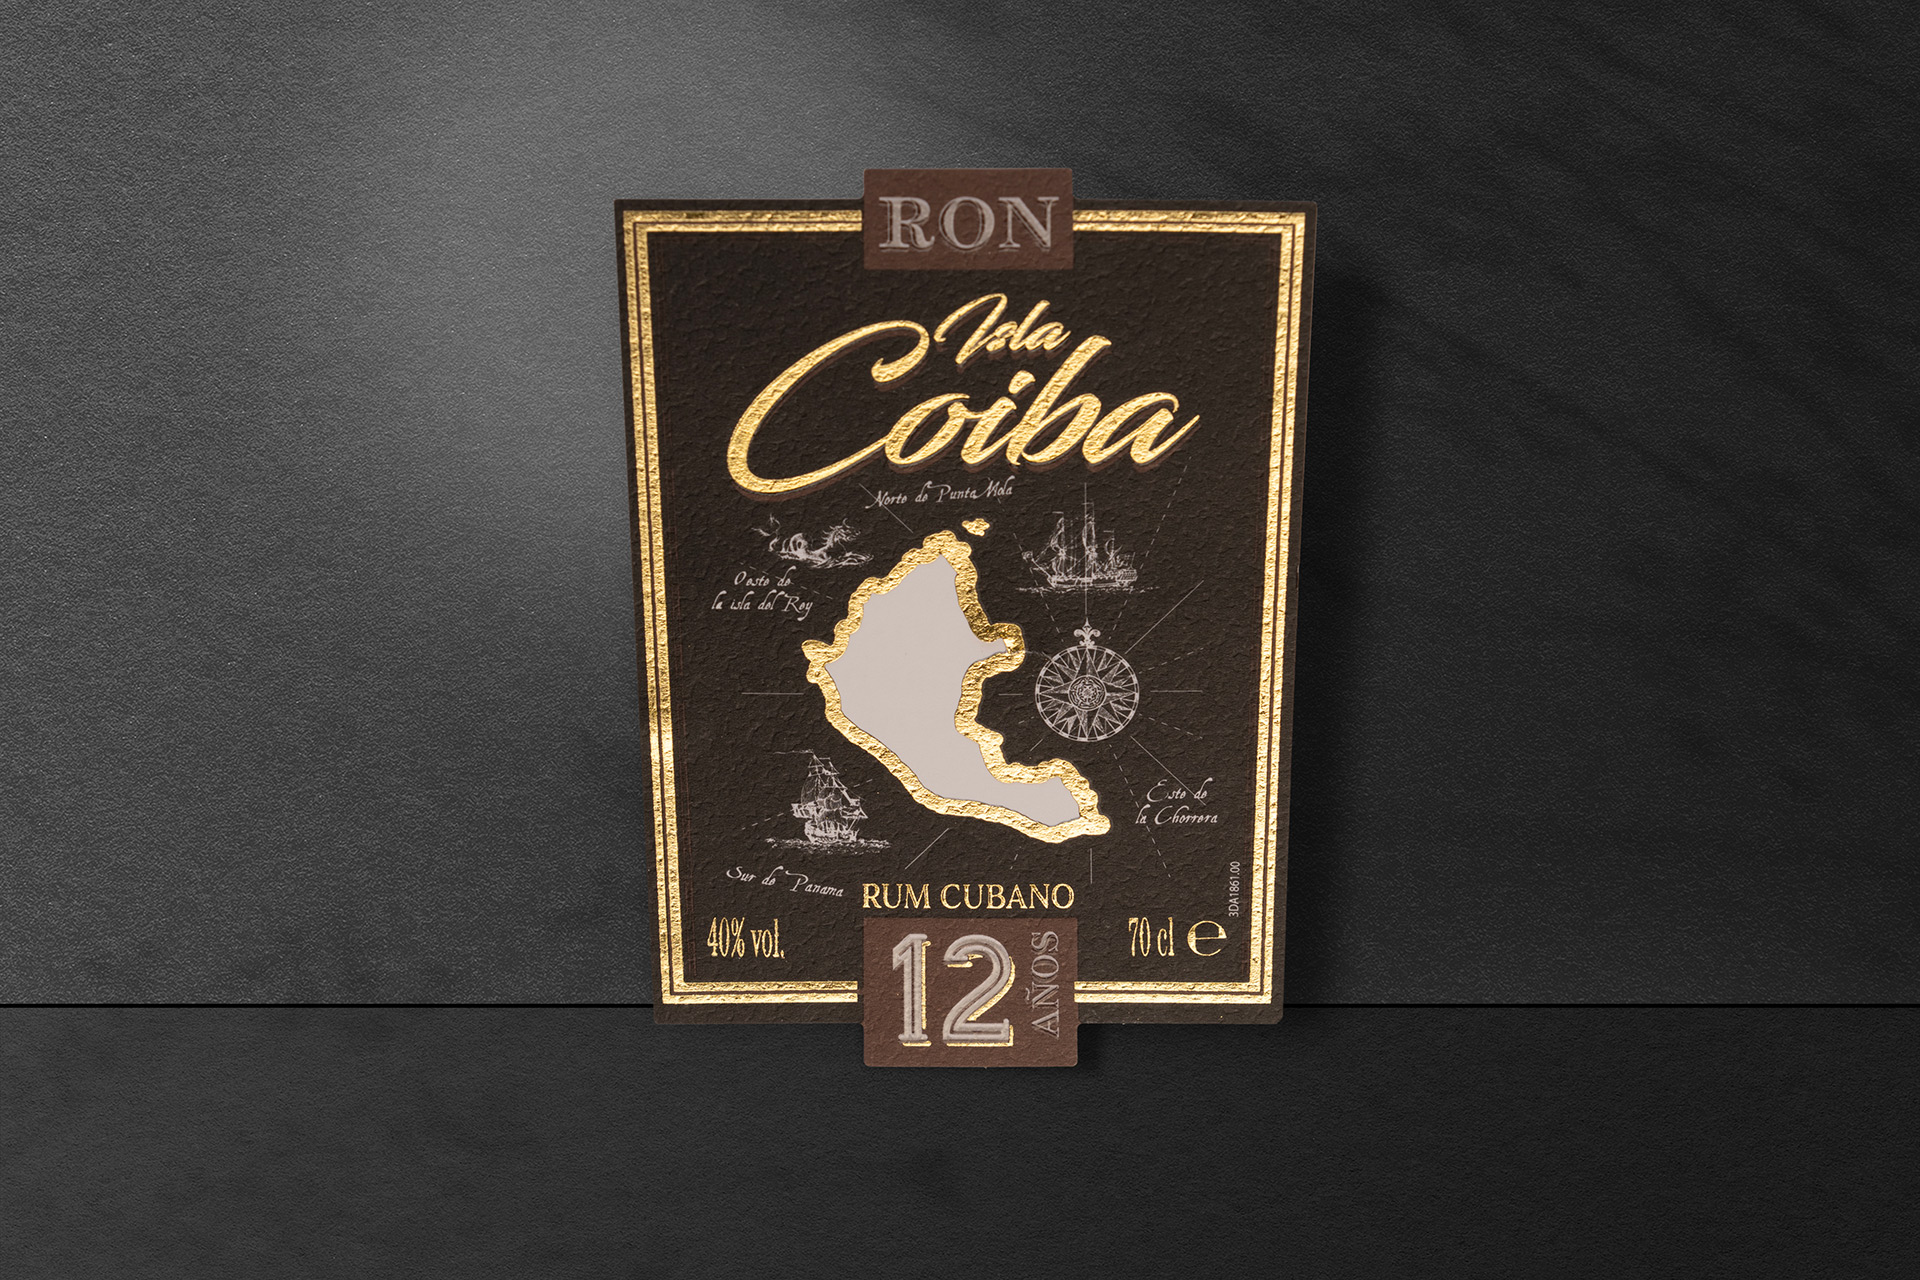 Coiba Rum cubano